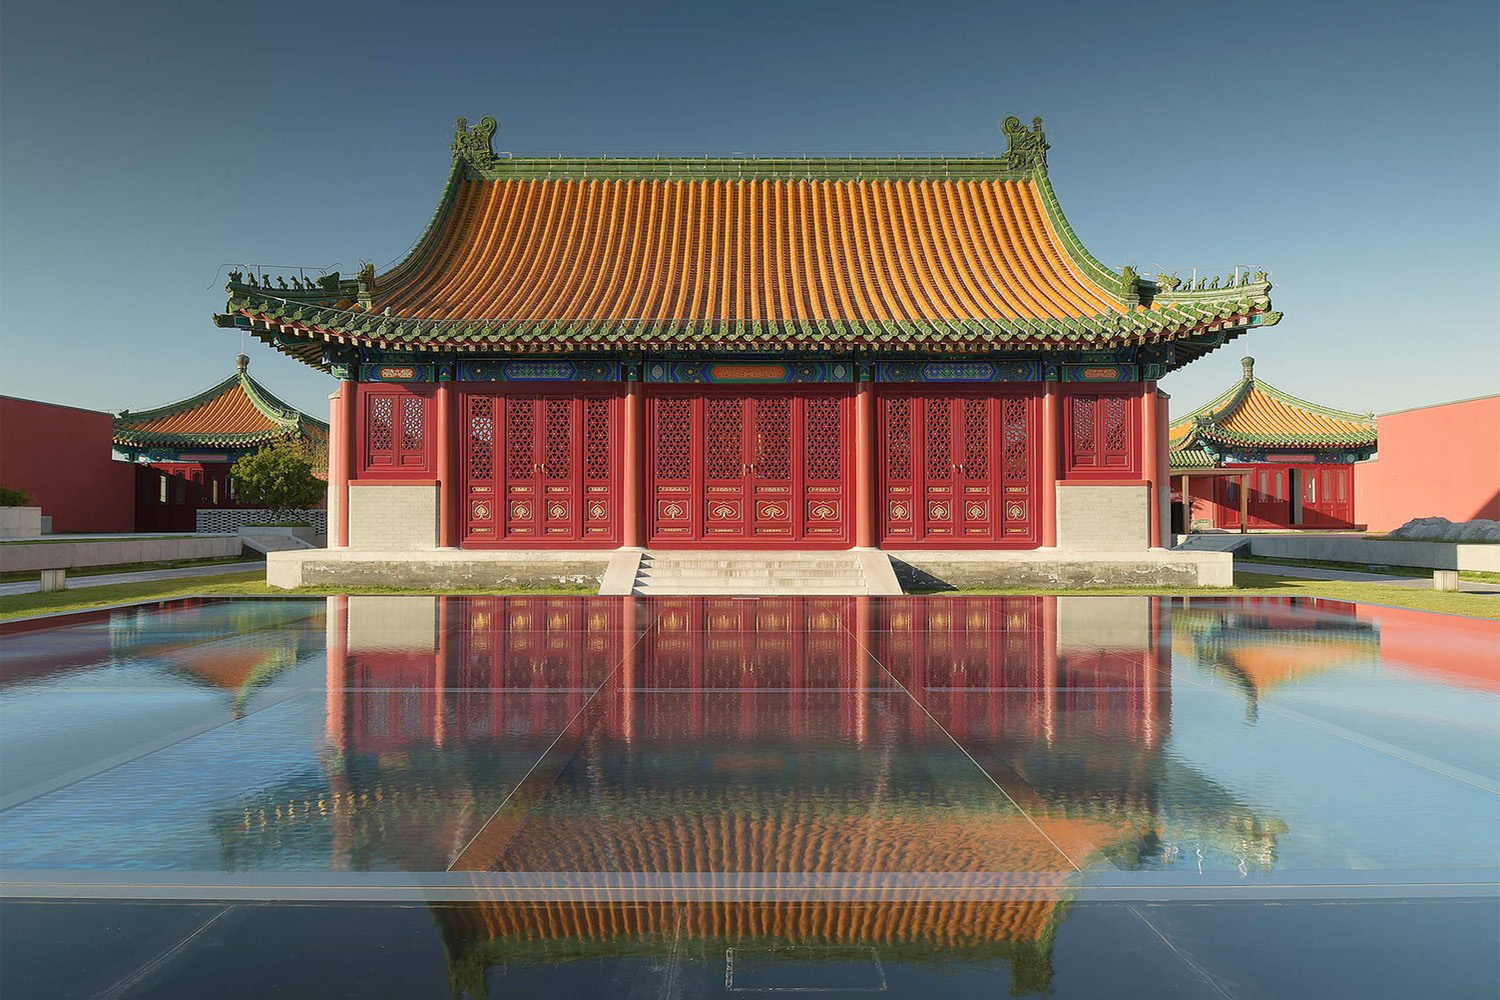 北京·隆福寺文化中心改造设计